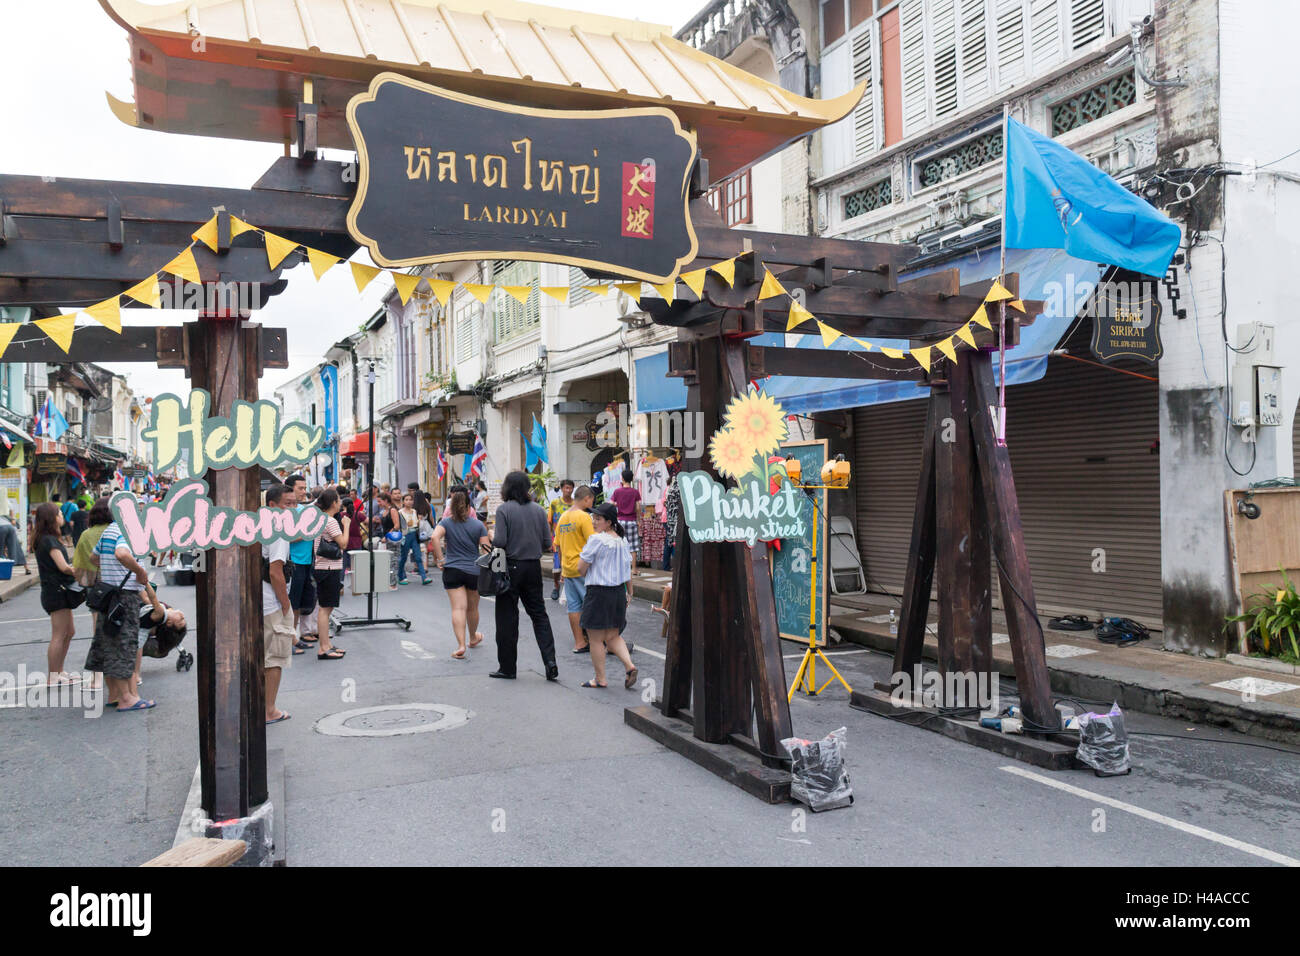 Dimanche walking street market dans la vieille ville de Phuket, Thaïlande Banque D'Images